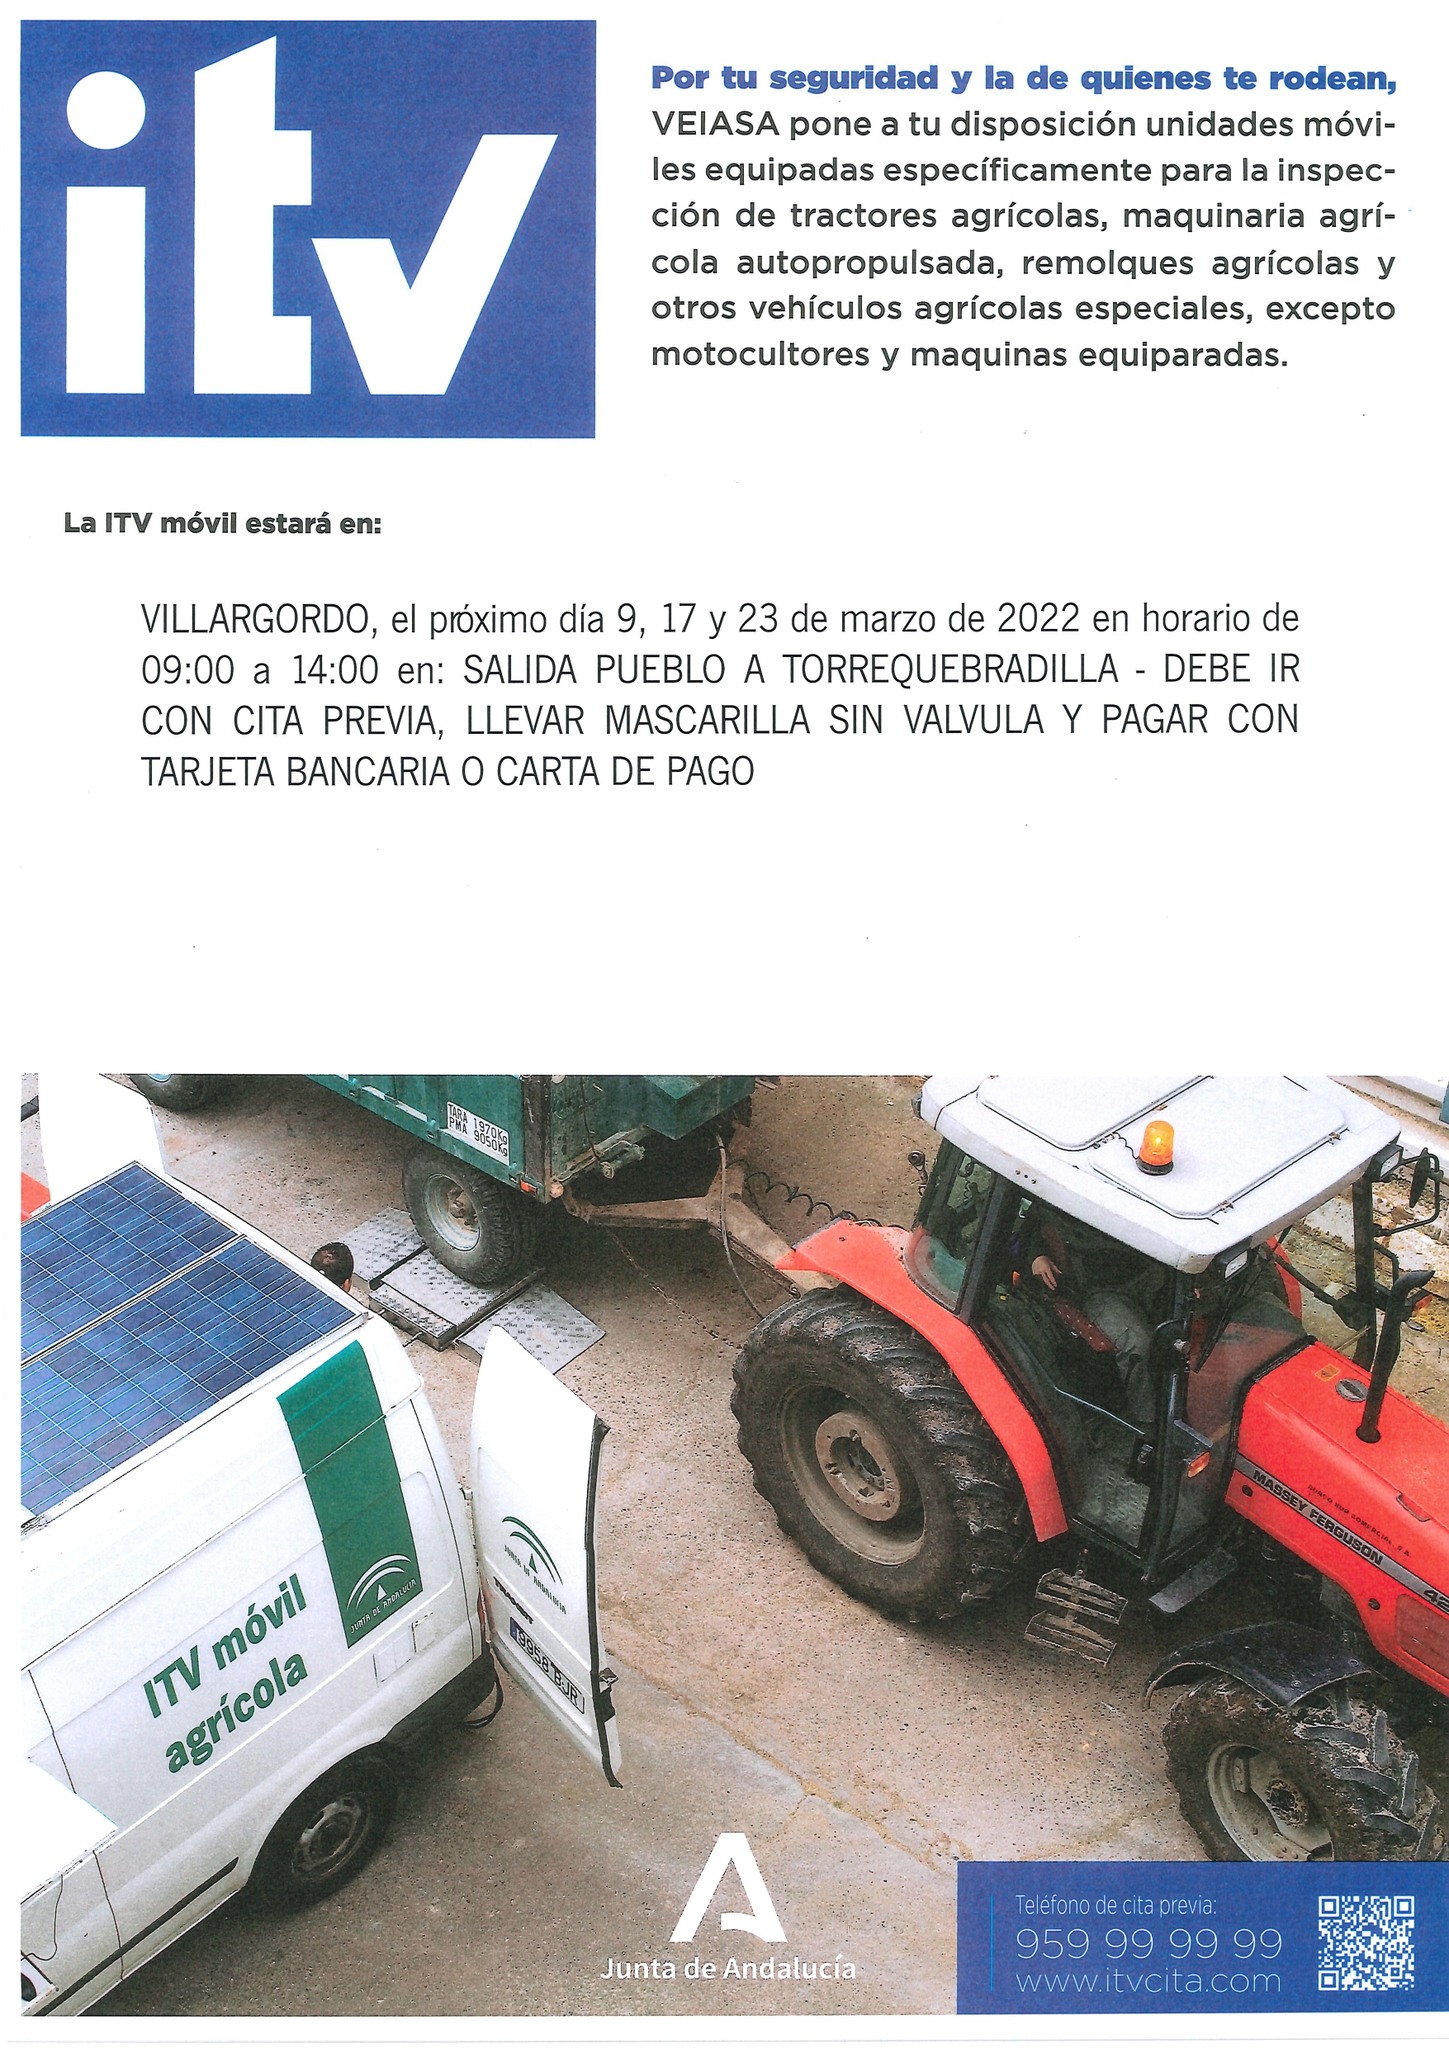 ITV Móvil para vehículos agrícolas